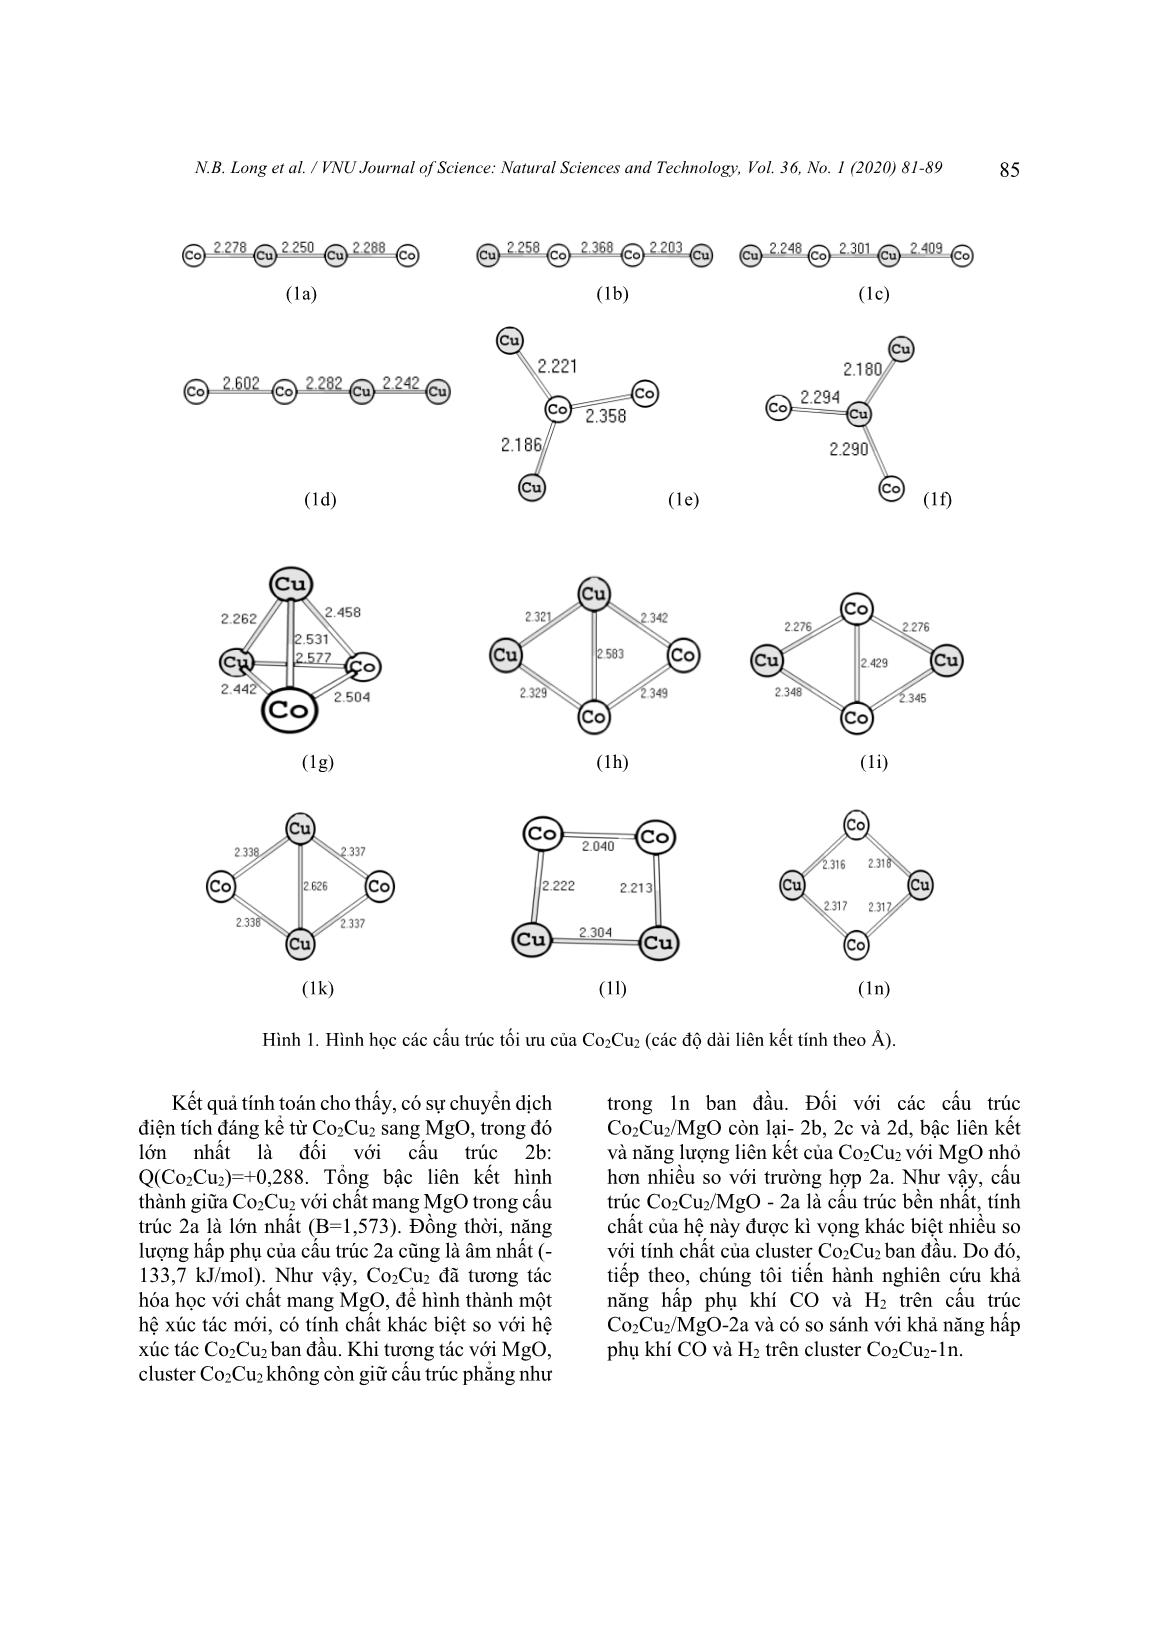 Nghiên cứu lí thuyết phản ứng hydro hóa CO trên hệ xúc tác lưỡng kim loại Co2Cu2 trên chất mang MgO(200) bằng phương pháp phiếm hàm mật độ - Phần 1: Giai đoạn hấp phụ và hoạt hóa trang 5